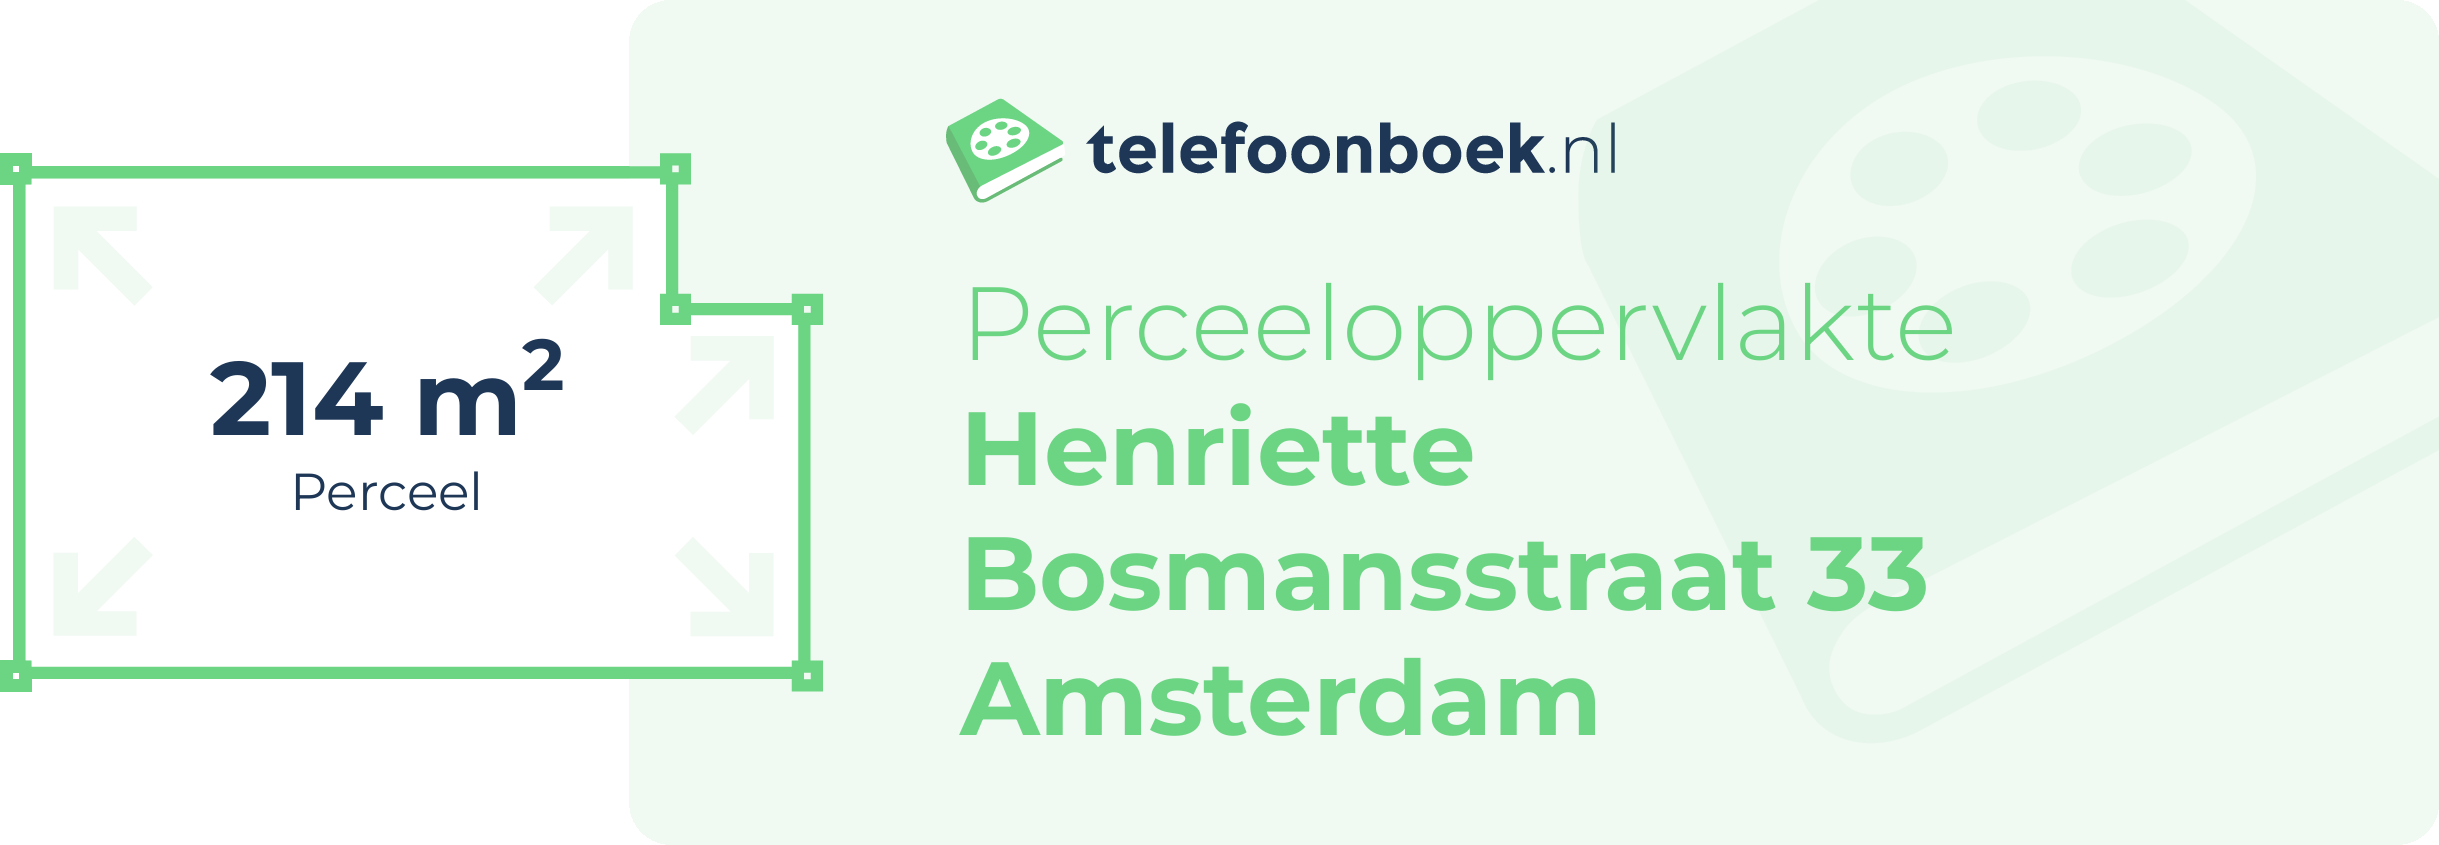 Perceeloppervlakte Henriette Bosmansstraat 33 Amsterdam